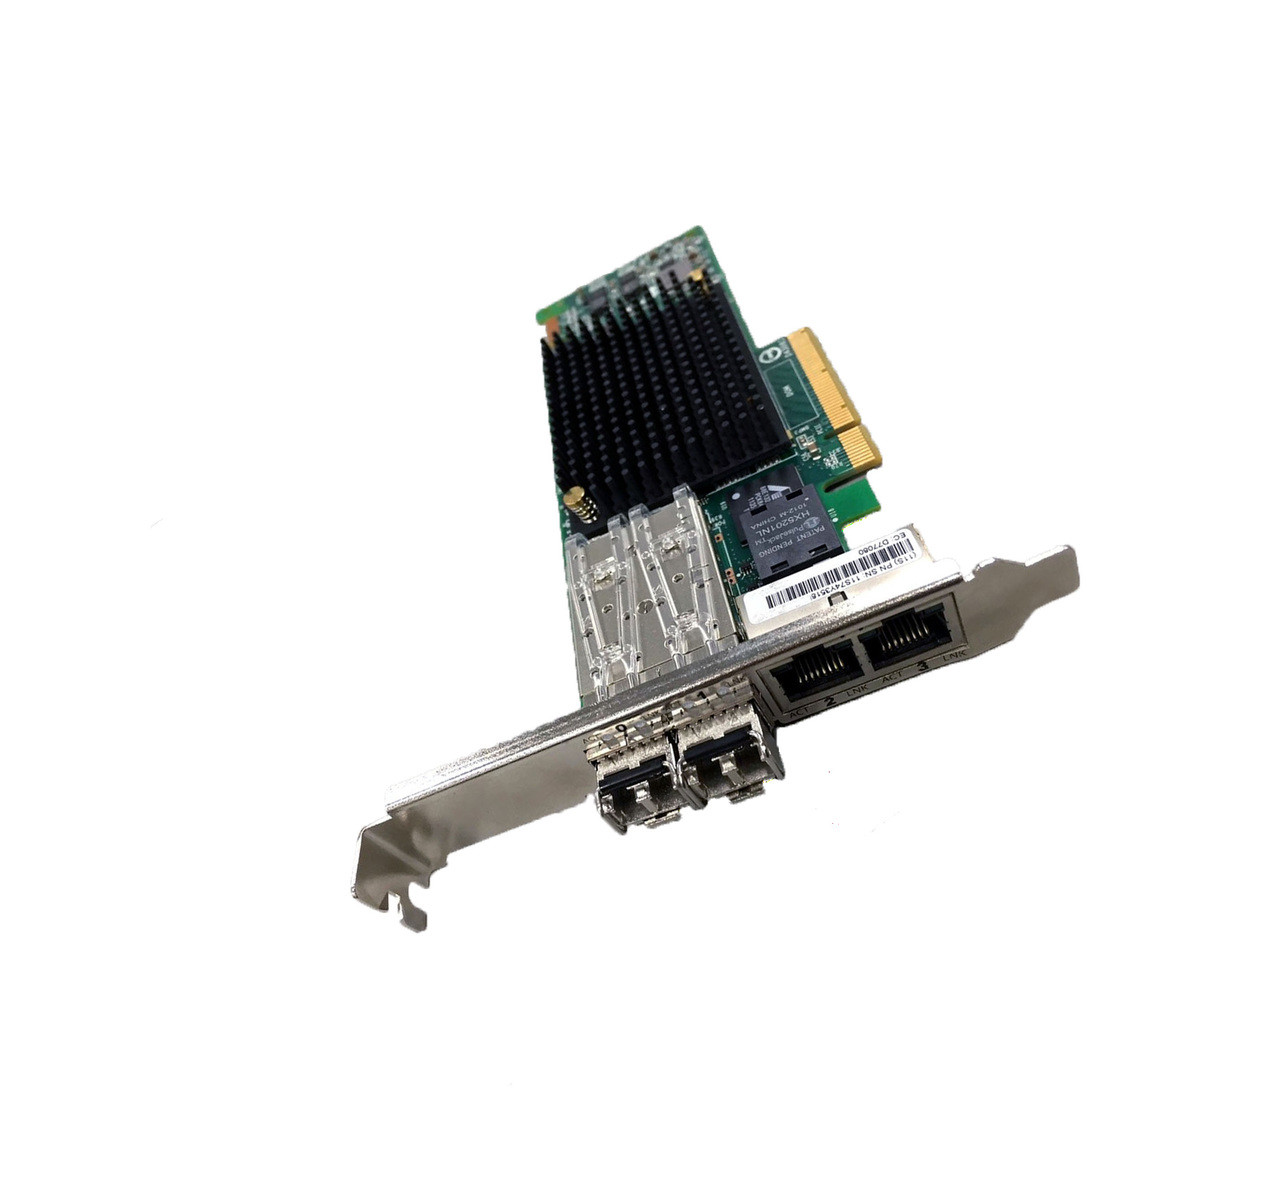 Details about   Digi Neo PCIe 4 port 50001341-04 B REL 1425 95005900 A 